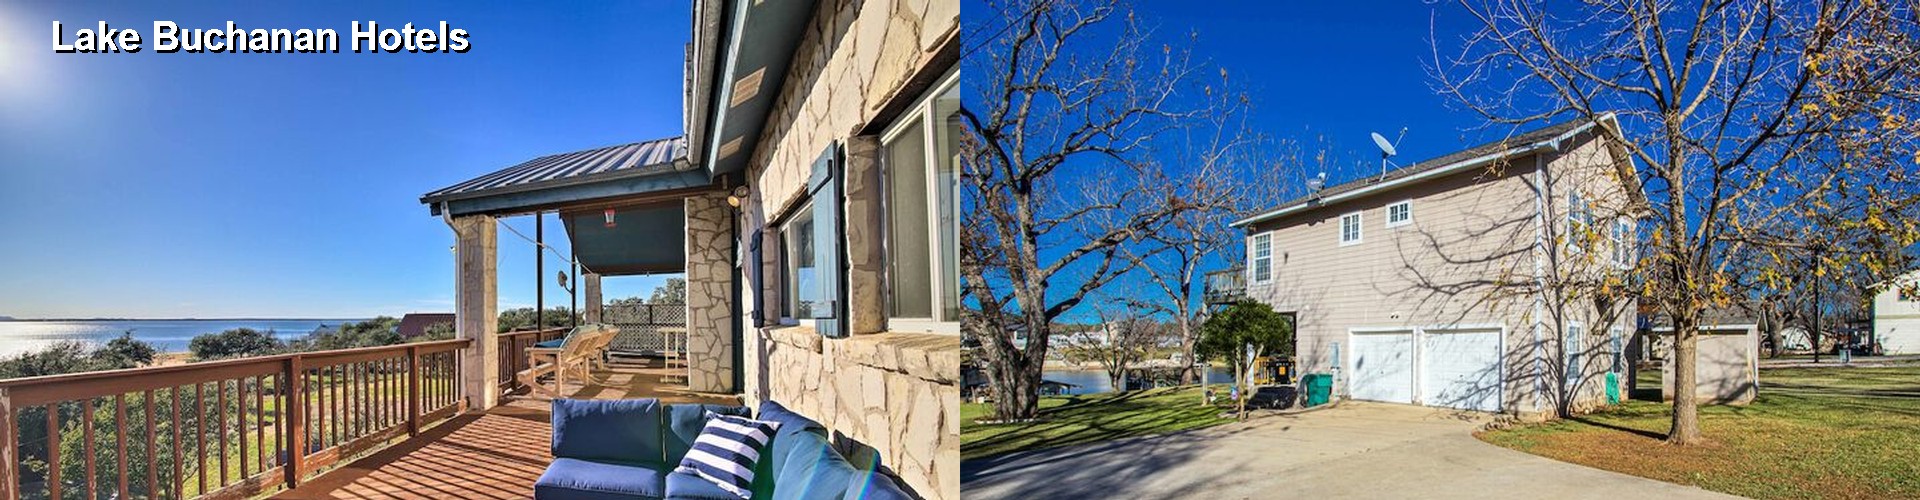 5 Best Hotels near Lake Buchanan